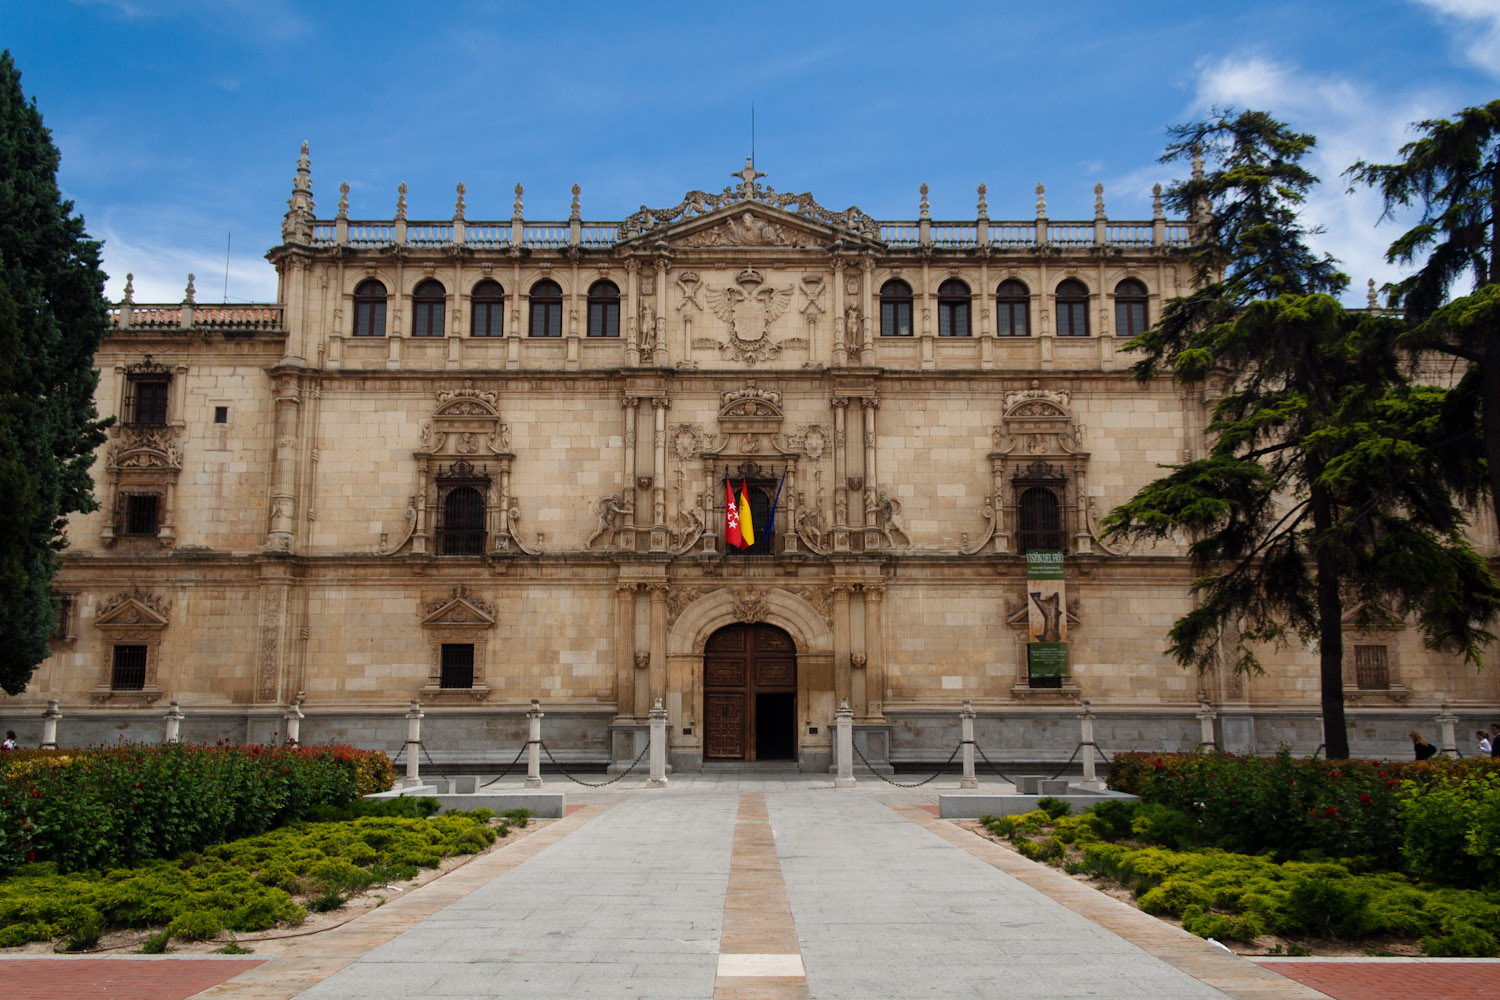 Fachada del Colegio Mayor de San Ildefonso, hoy día rectorado de la Universidad de Alcalá, Alcalá de Henares, España